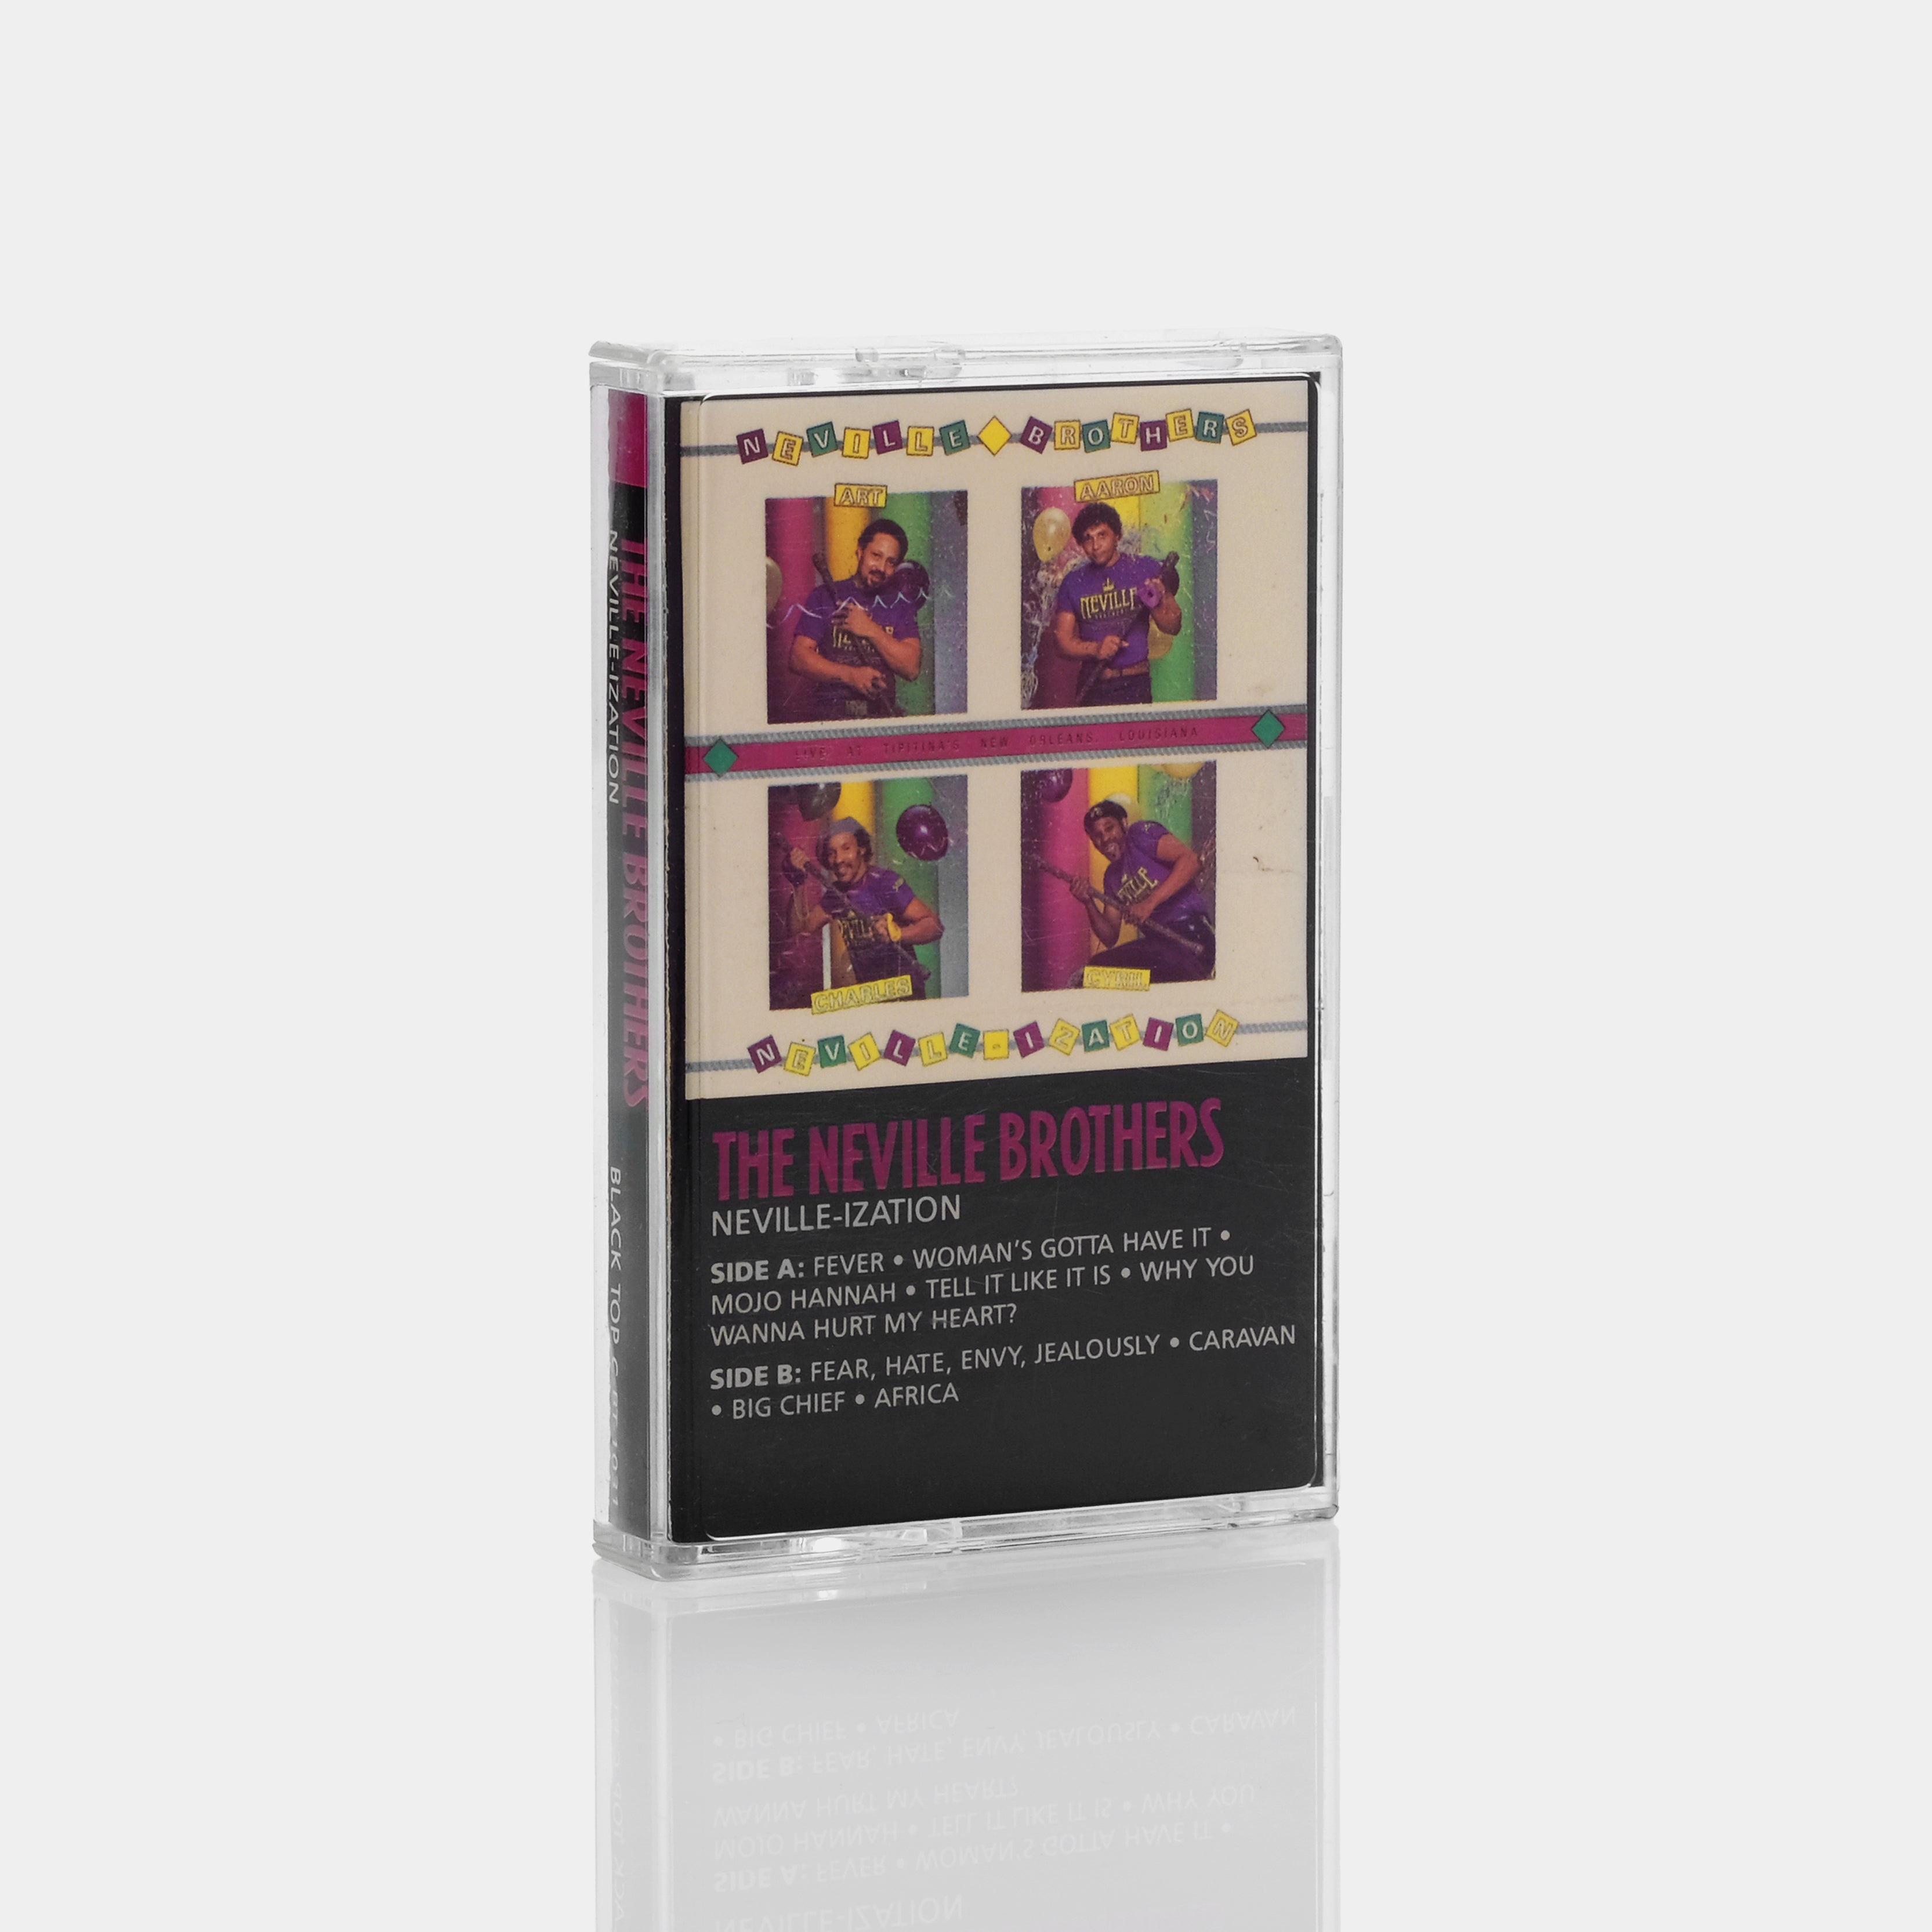 The Neville Brothers - Neville-ization Cassette Tape